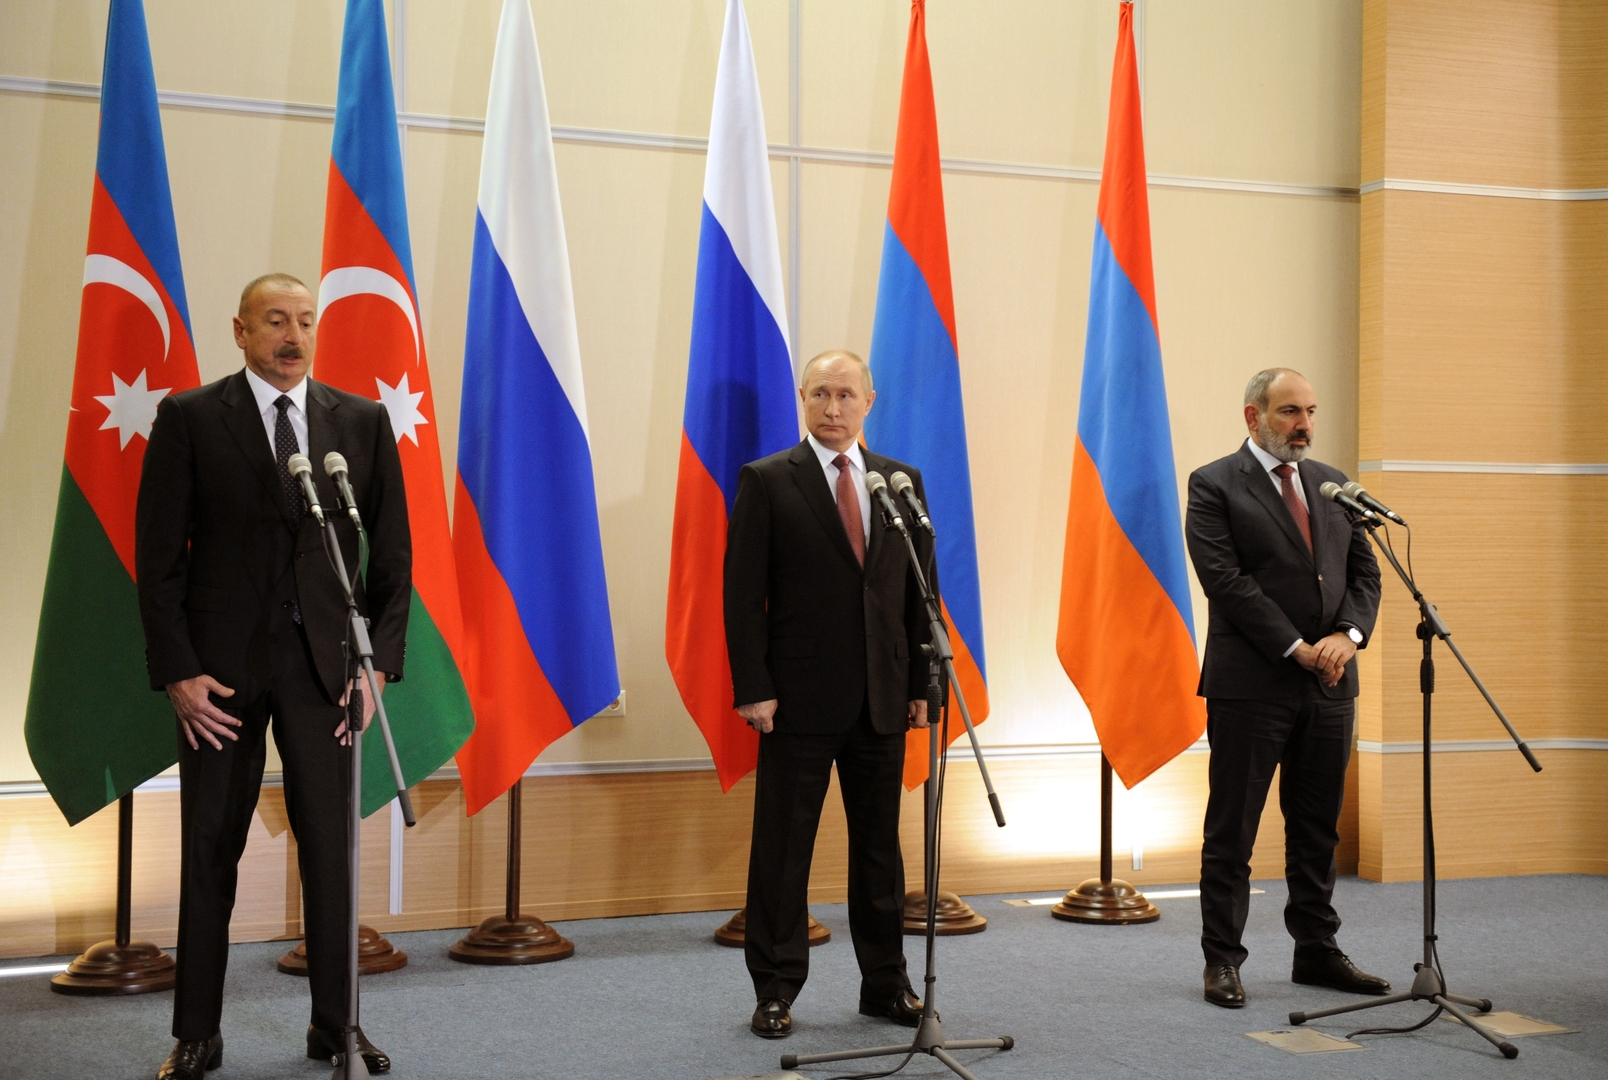 بوتين وعلييف وباشيناين يصدرون بيانا مشتركا عقب اجتماعهم في سوتشي